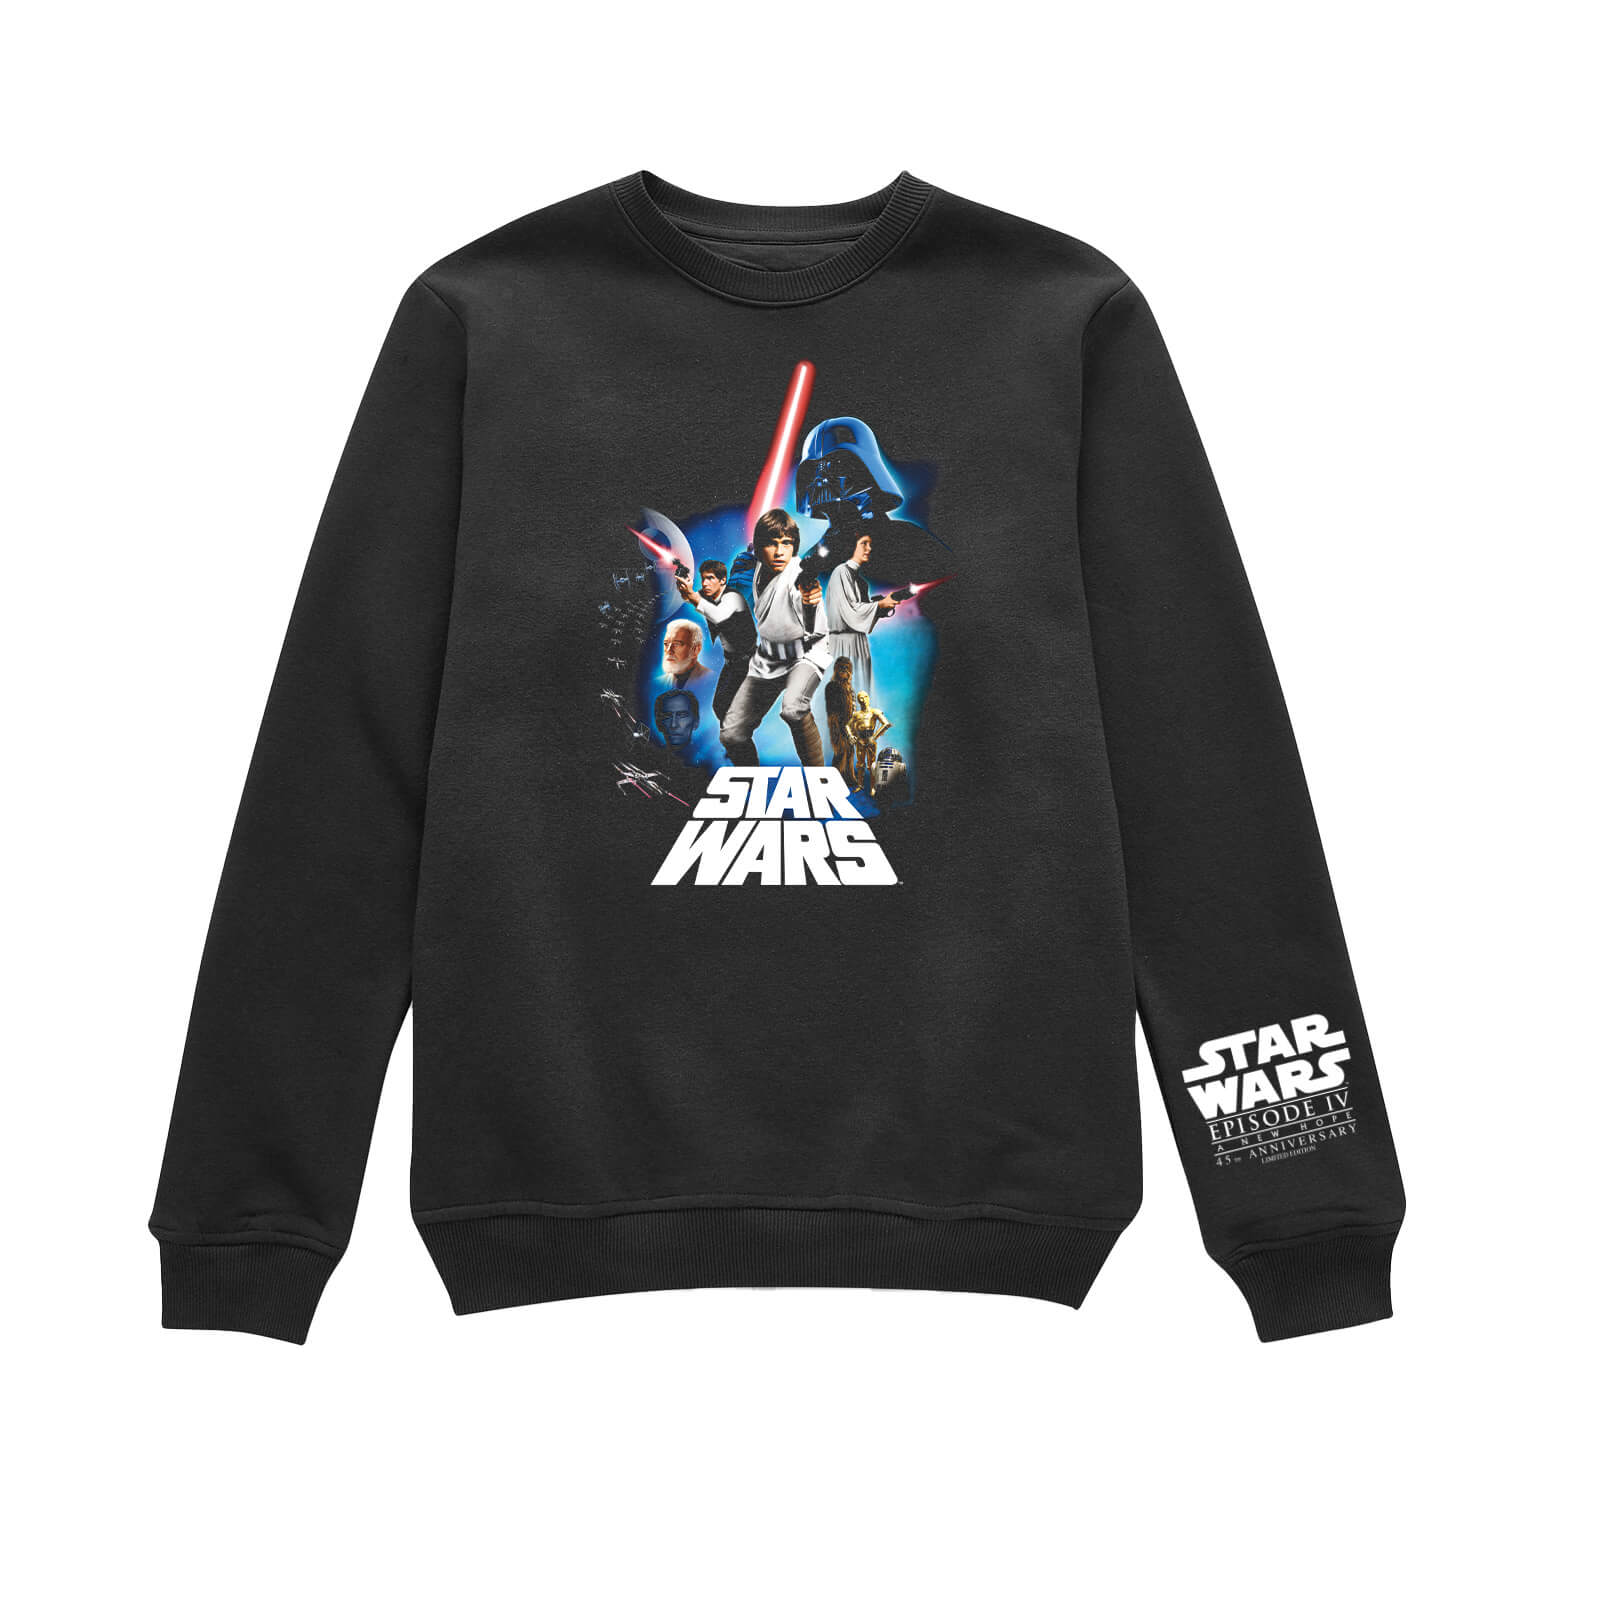 Star Wars - Un Nouvel Espoir - 45e anniversaire Composition Retro Unisexe Sweatshirt - Noir - XS